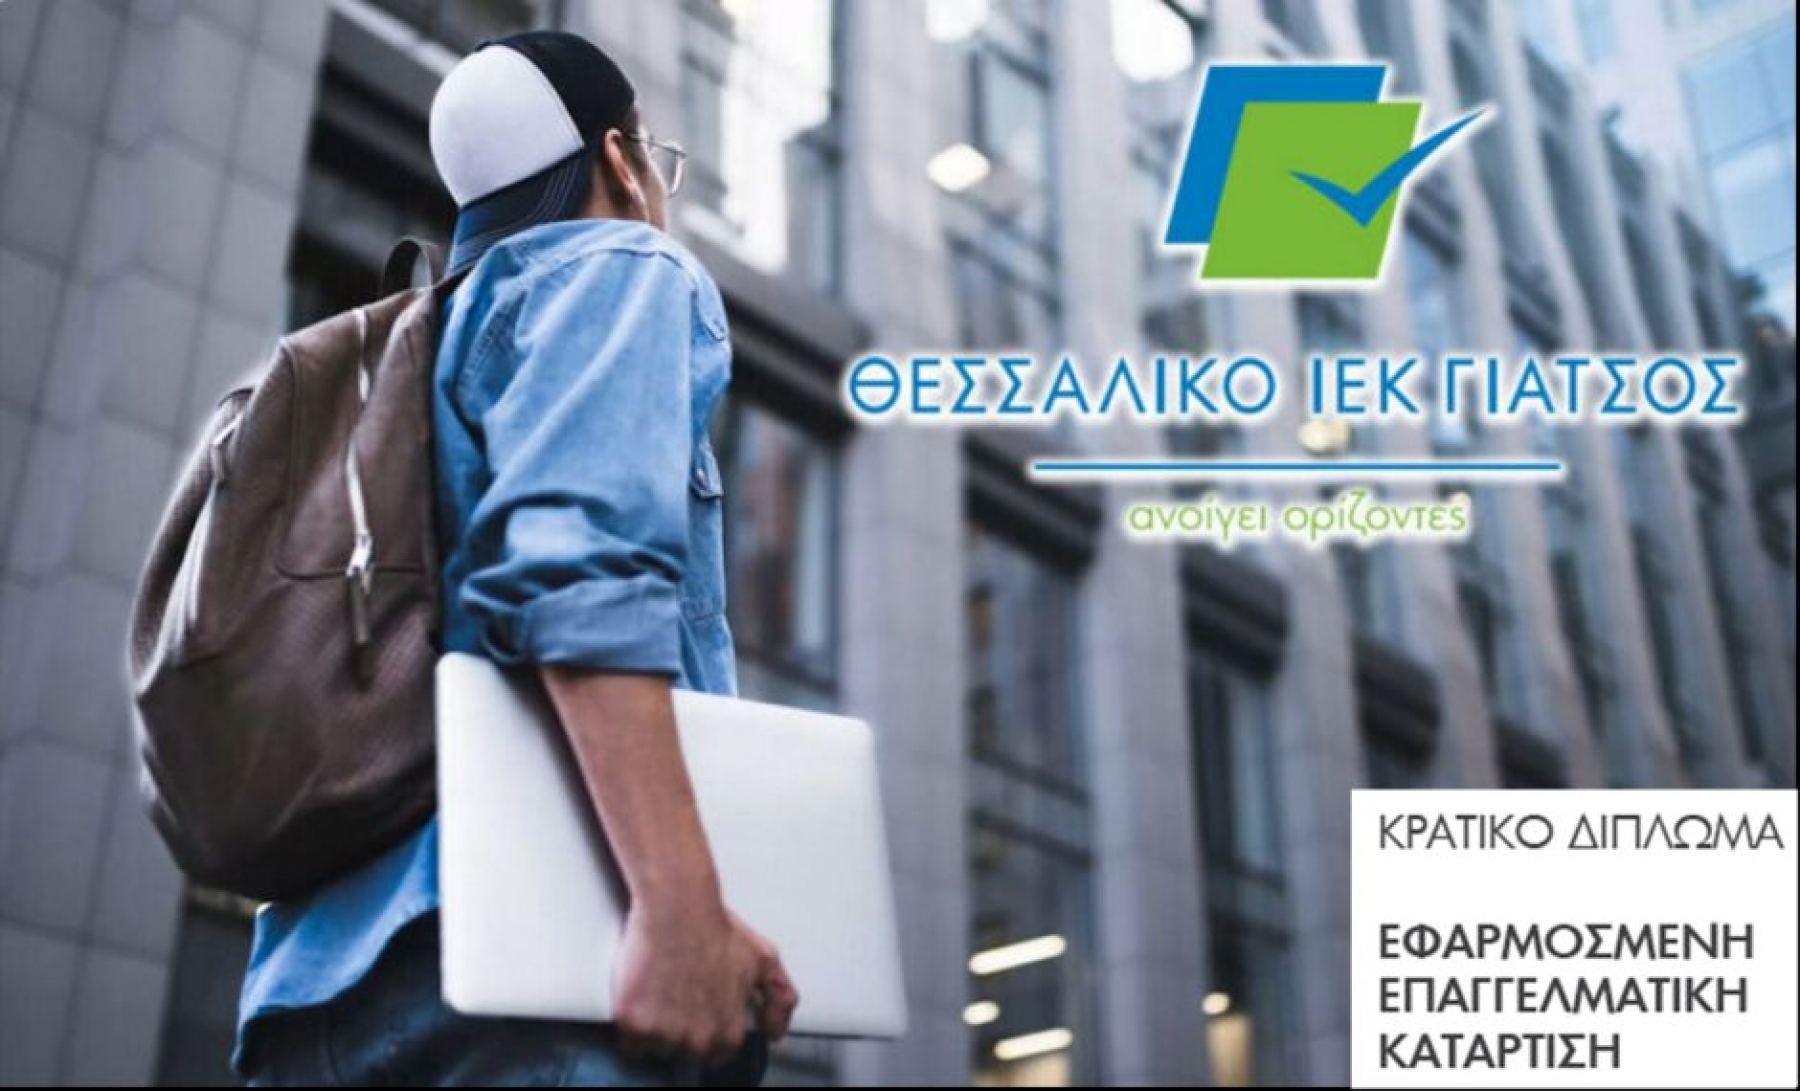 Λαμία: Ξεκίνησαν οι νέες εγγραφές σε όλες τις ειδικότητες για το «Θεσσαλικό ΙΕΚ Γιάτσος»